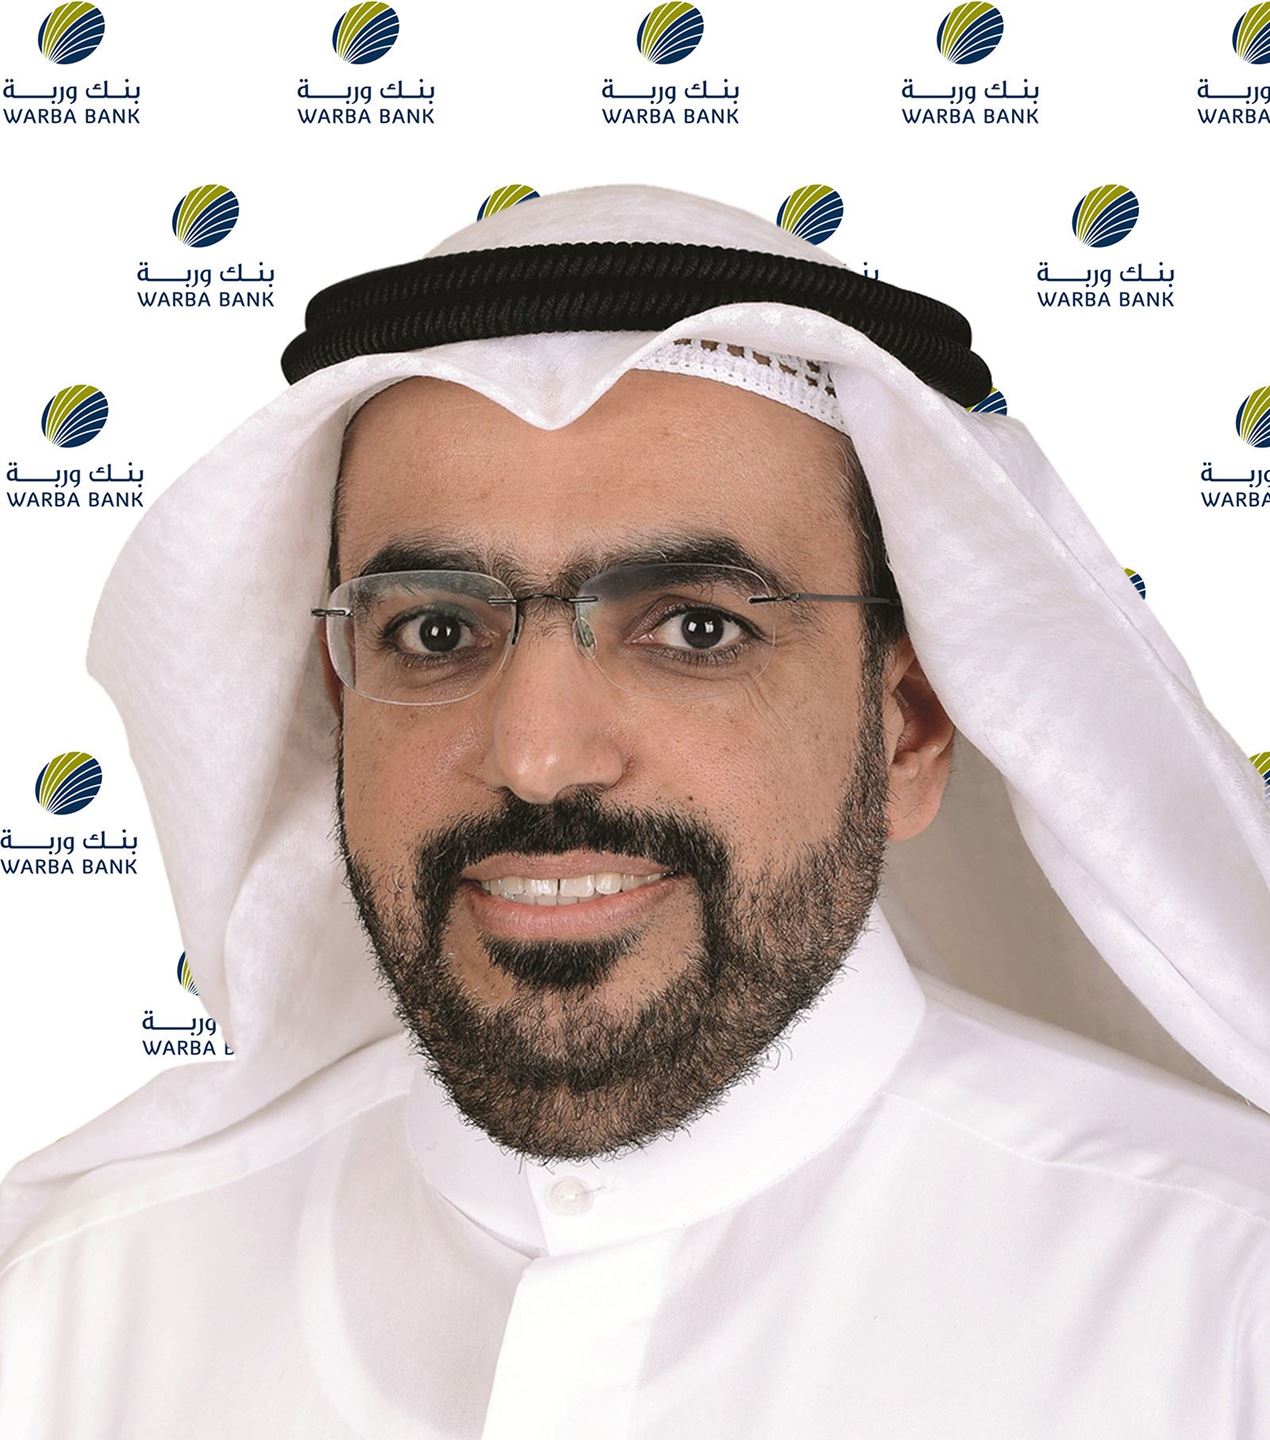 السيد شاهين حمد الغانم، الرئيس التنفيذي لبنك وربة